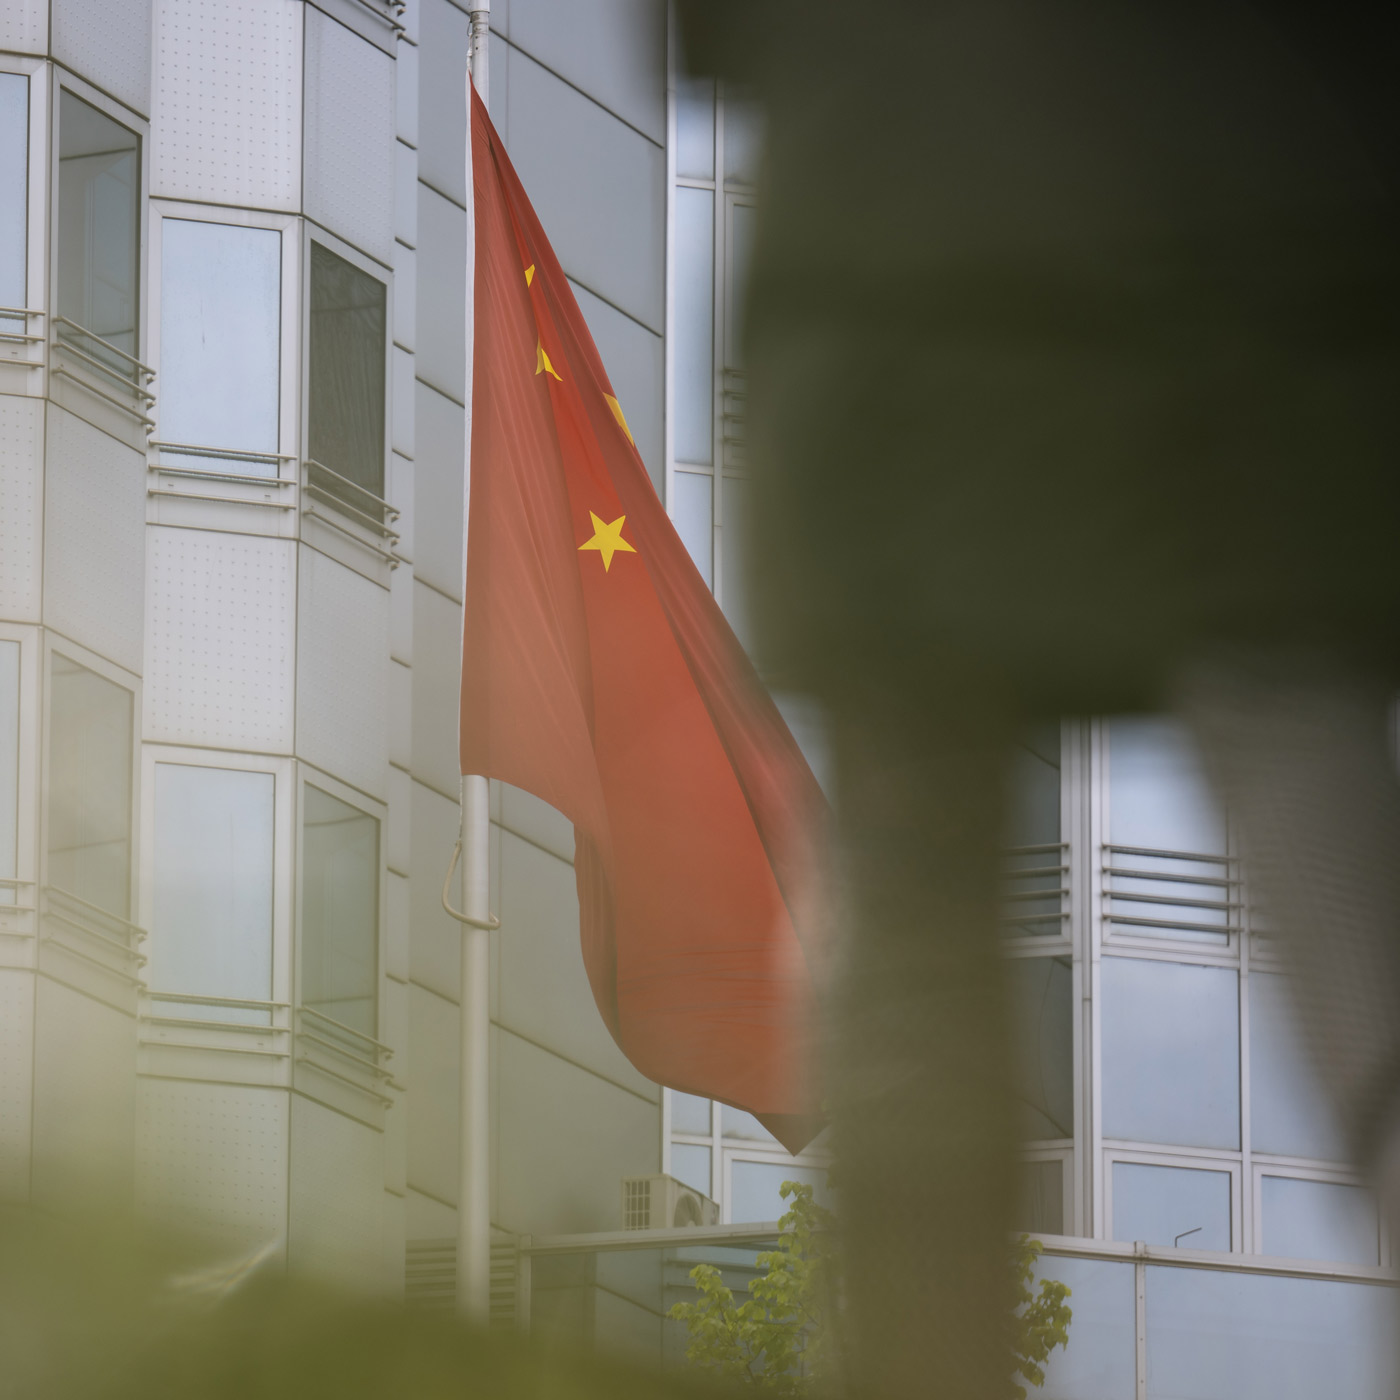 EU-Parlamentarier: Spionageverdacht für China "ungeheuerlich"